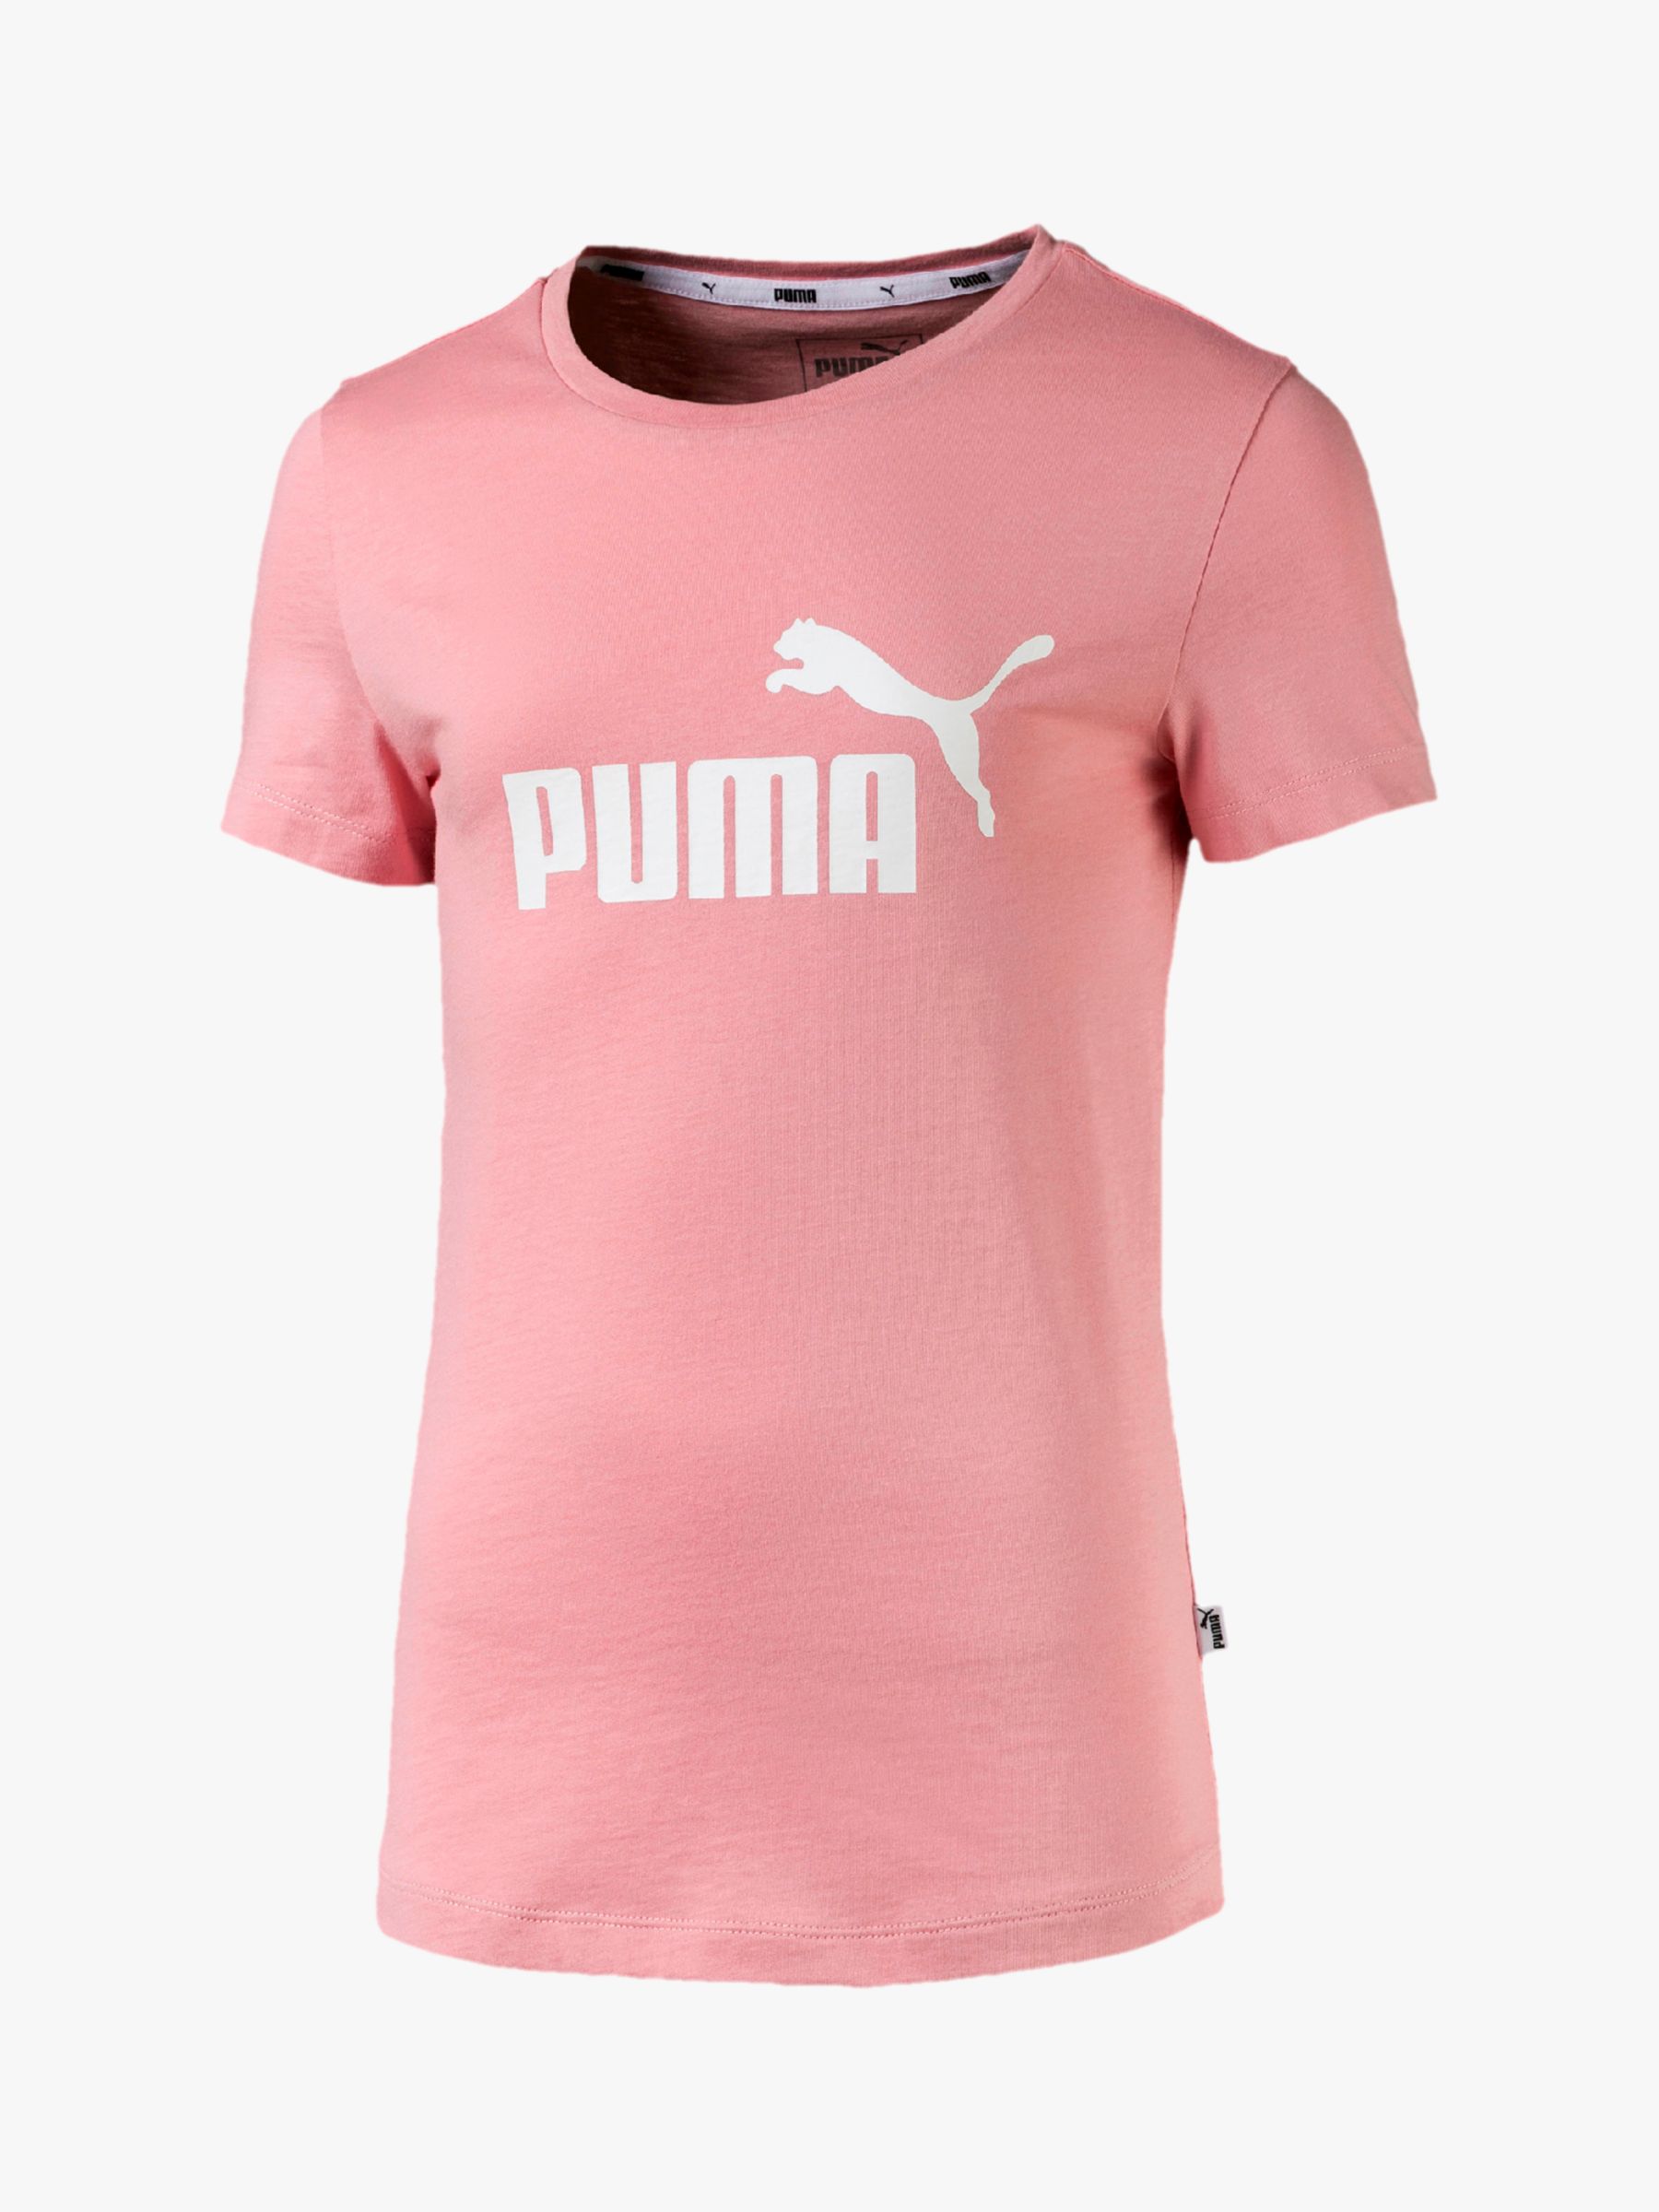 puma t shirt pink